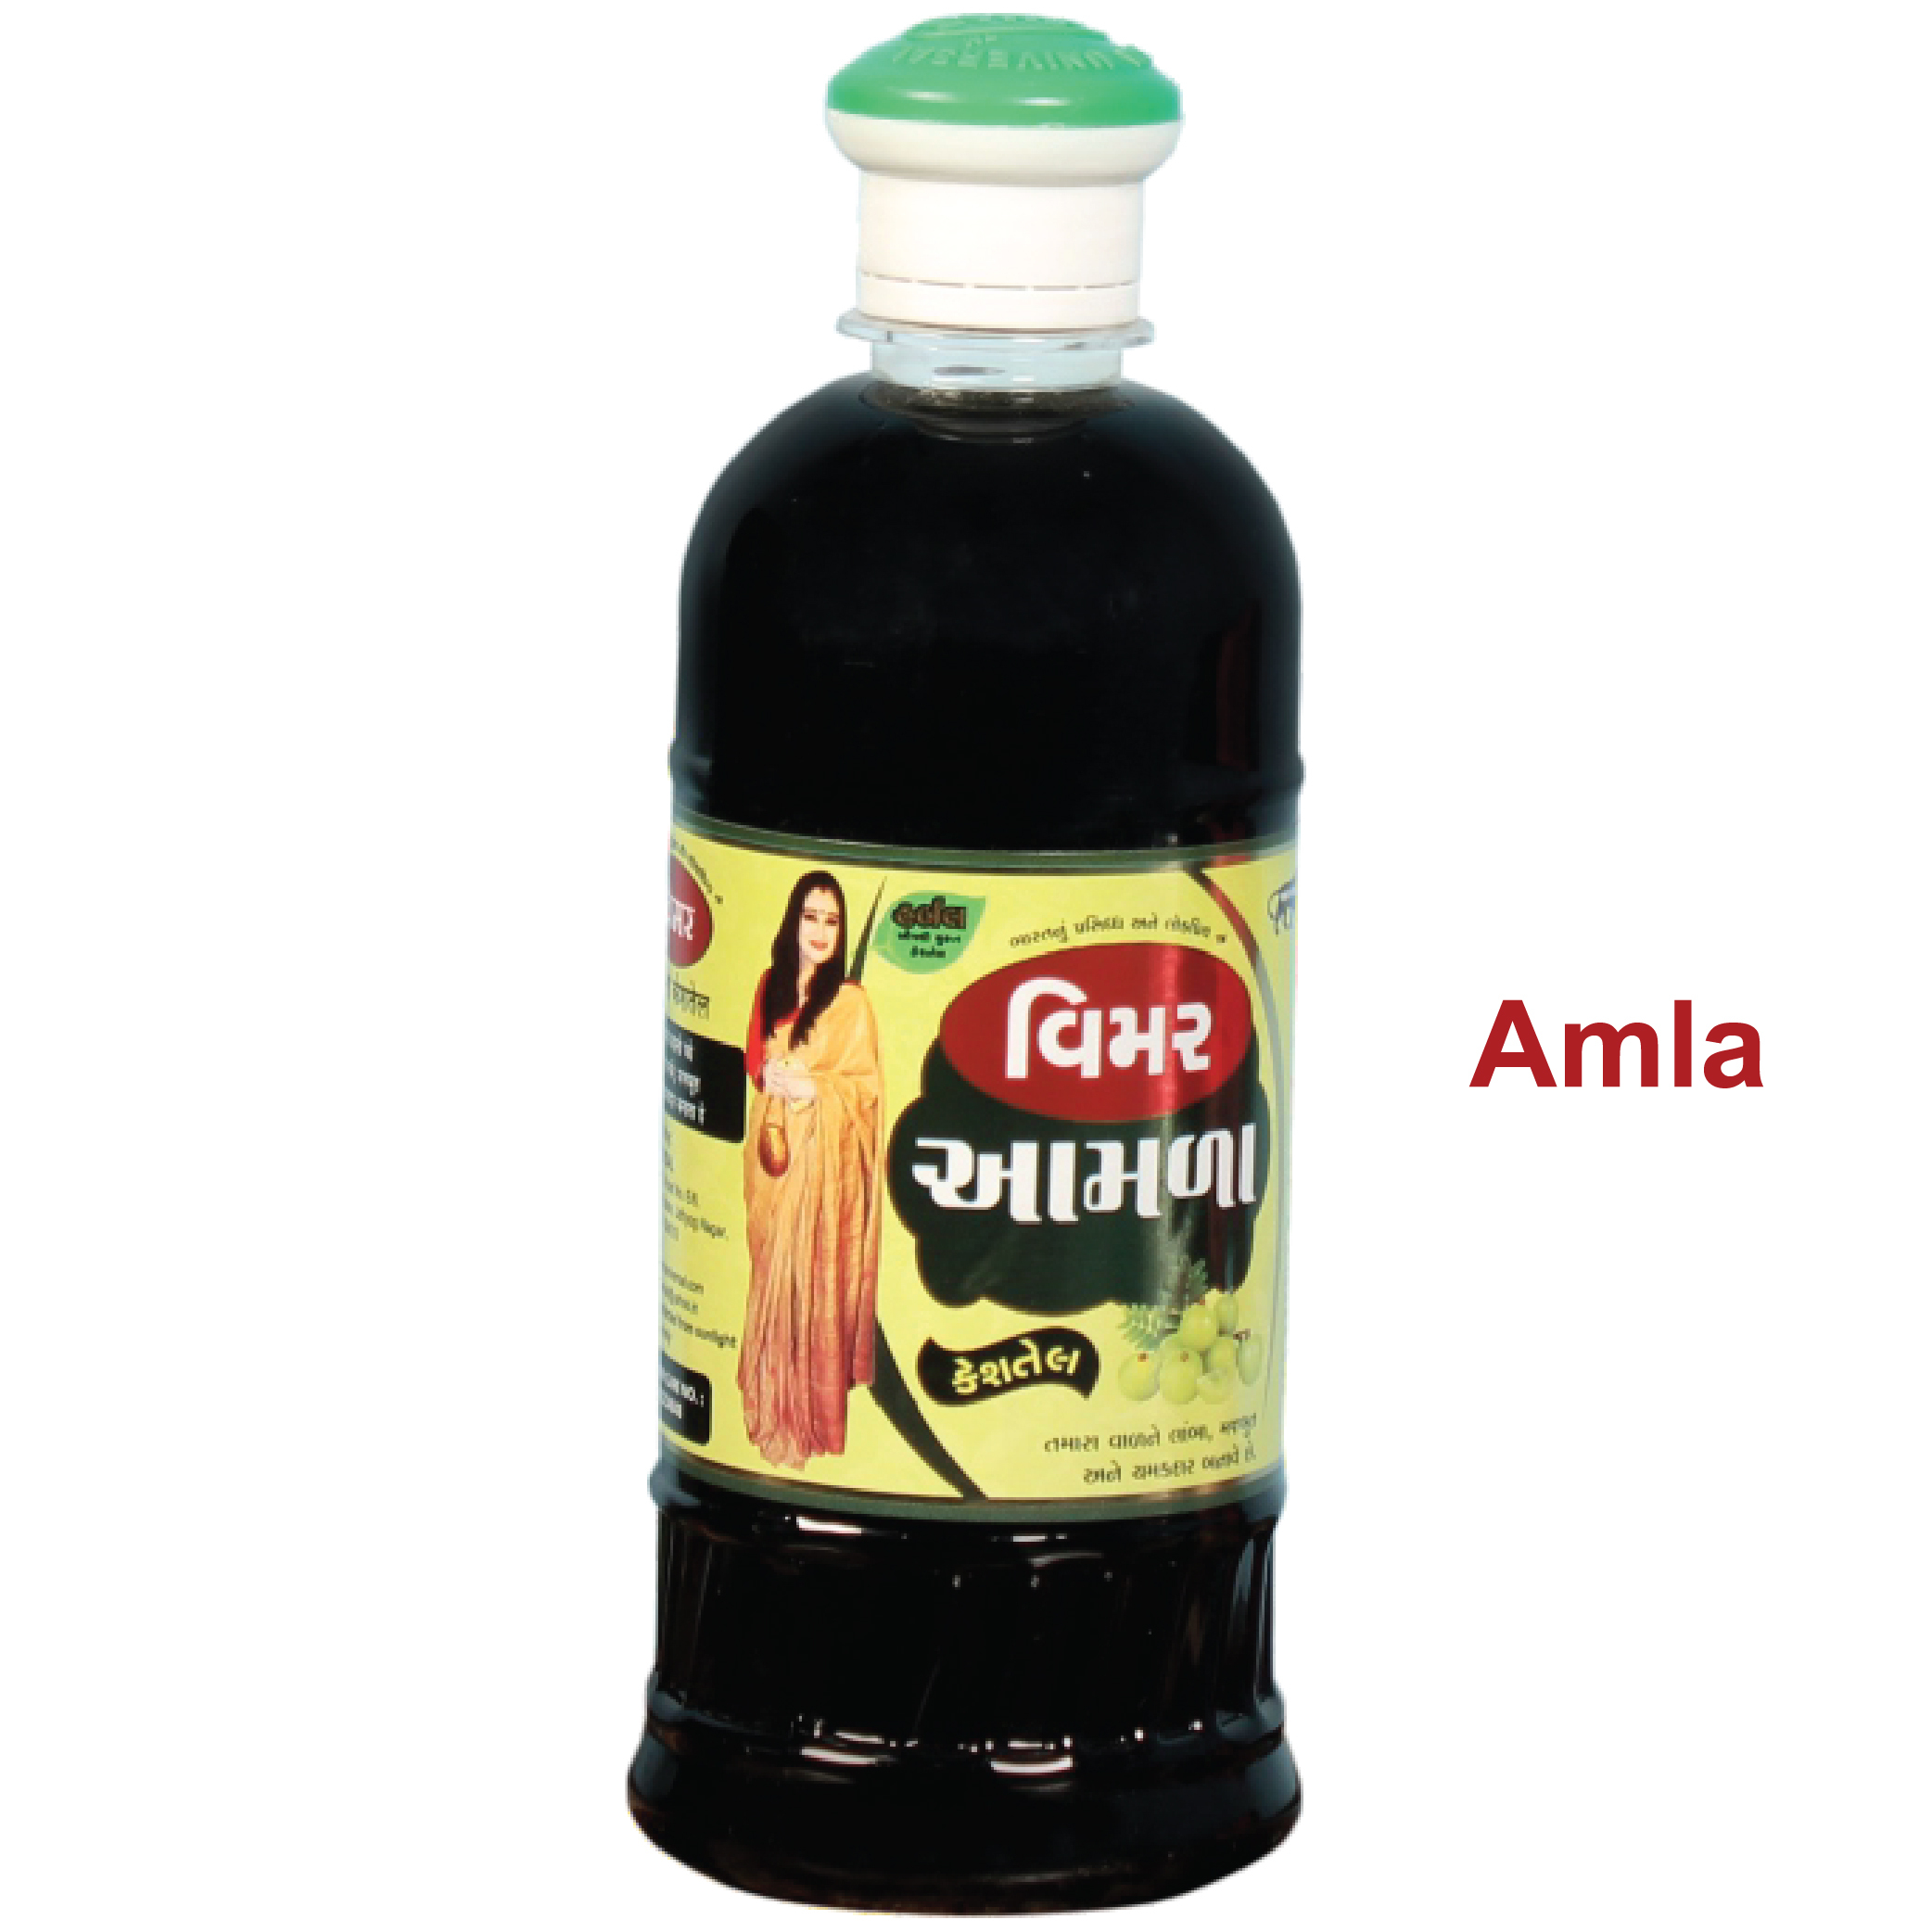 Amla Hair oils